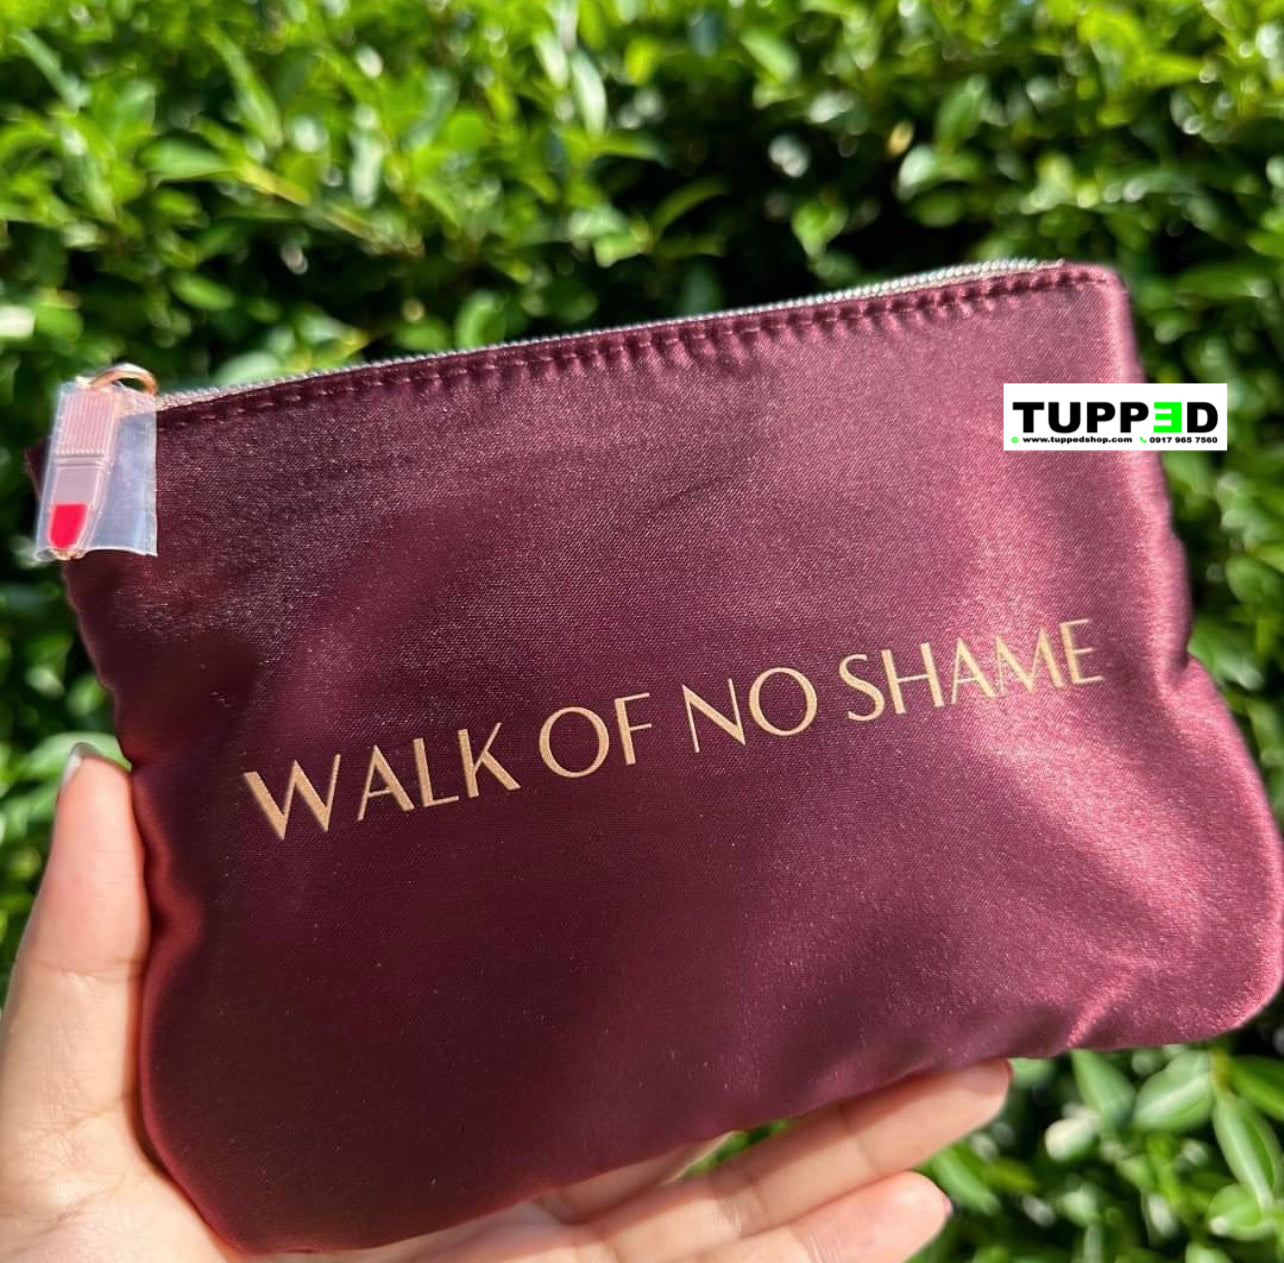 Charlotte Tilbury Make-Up Bag / Pouch (Walk of No Shame)